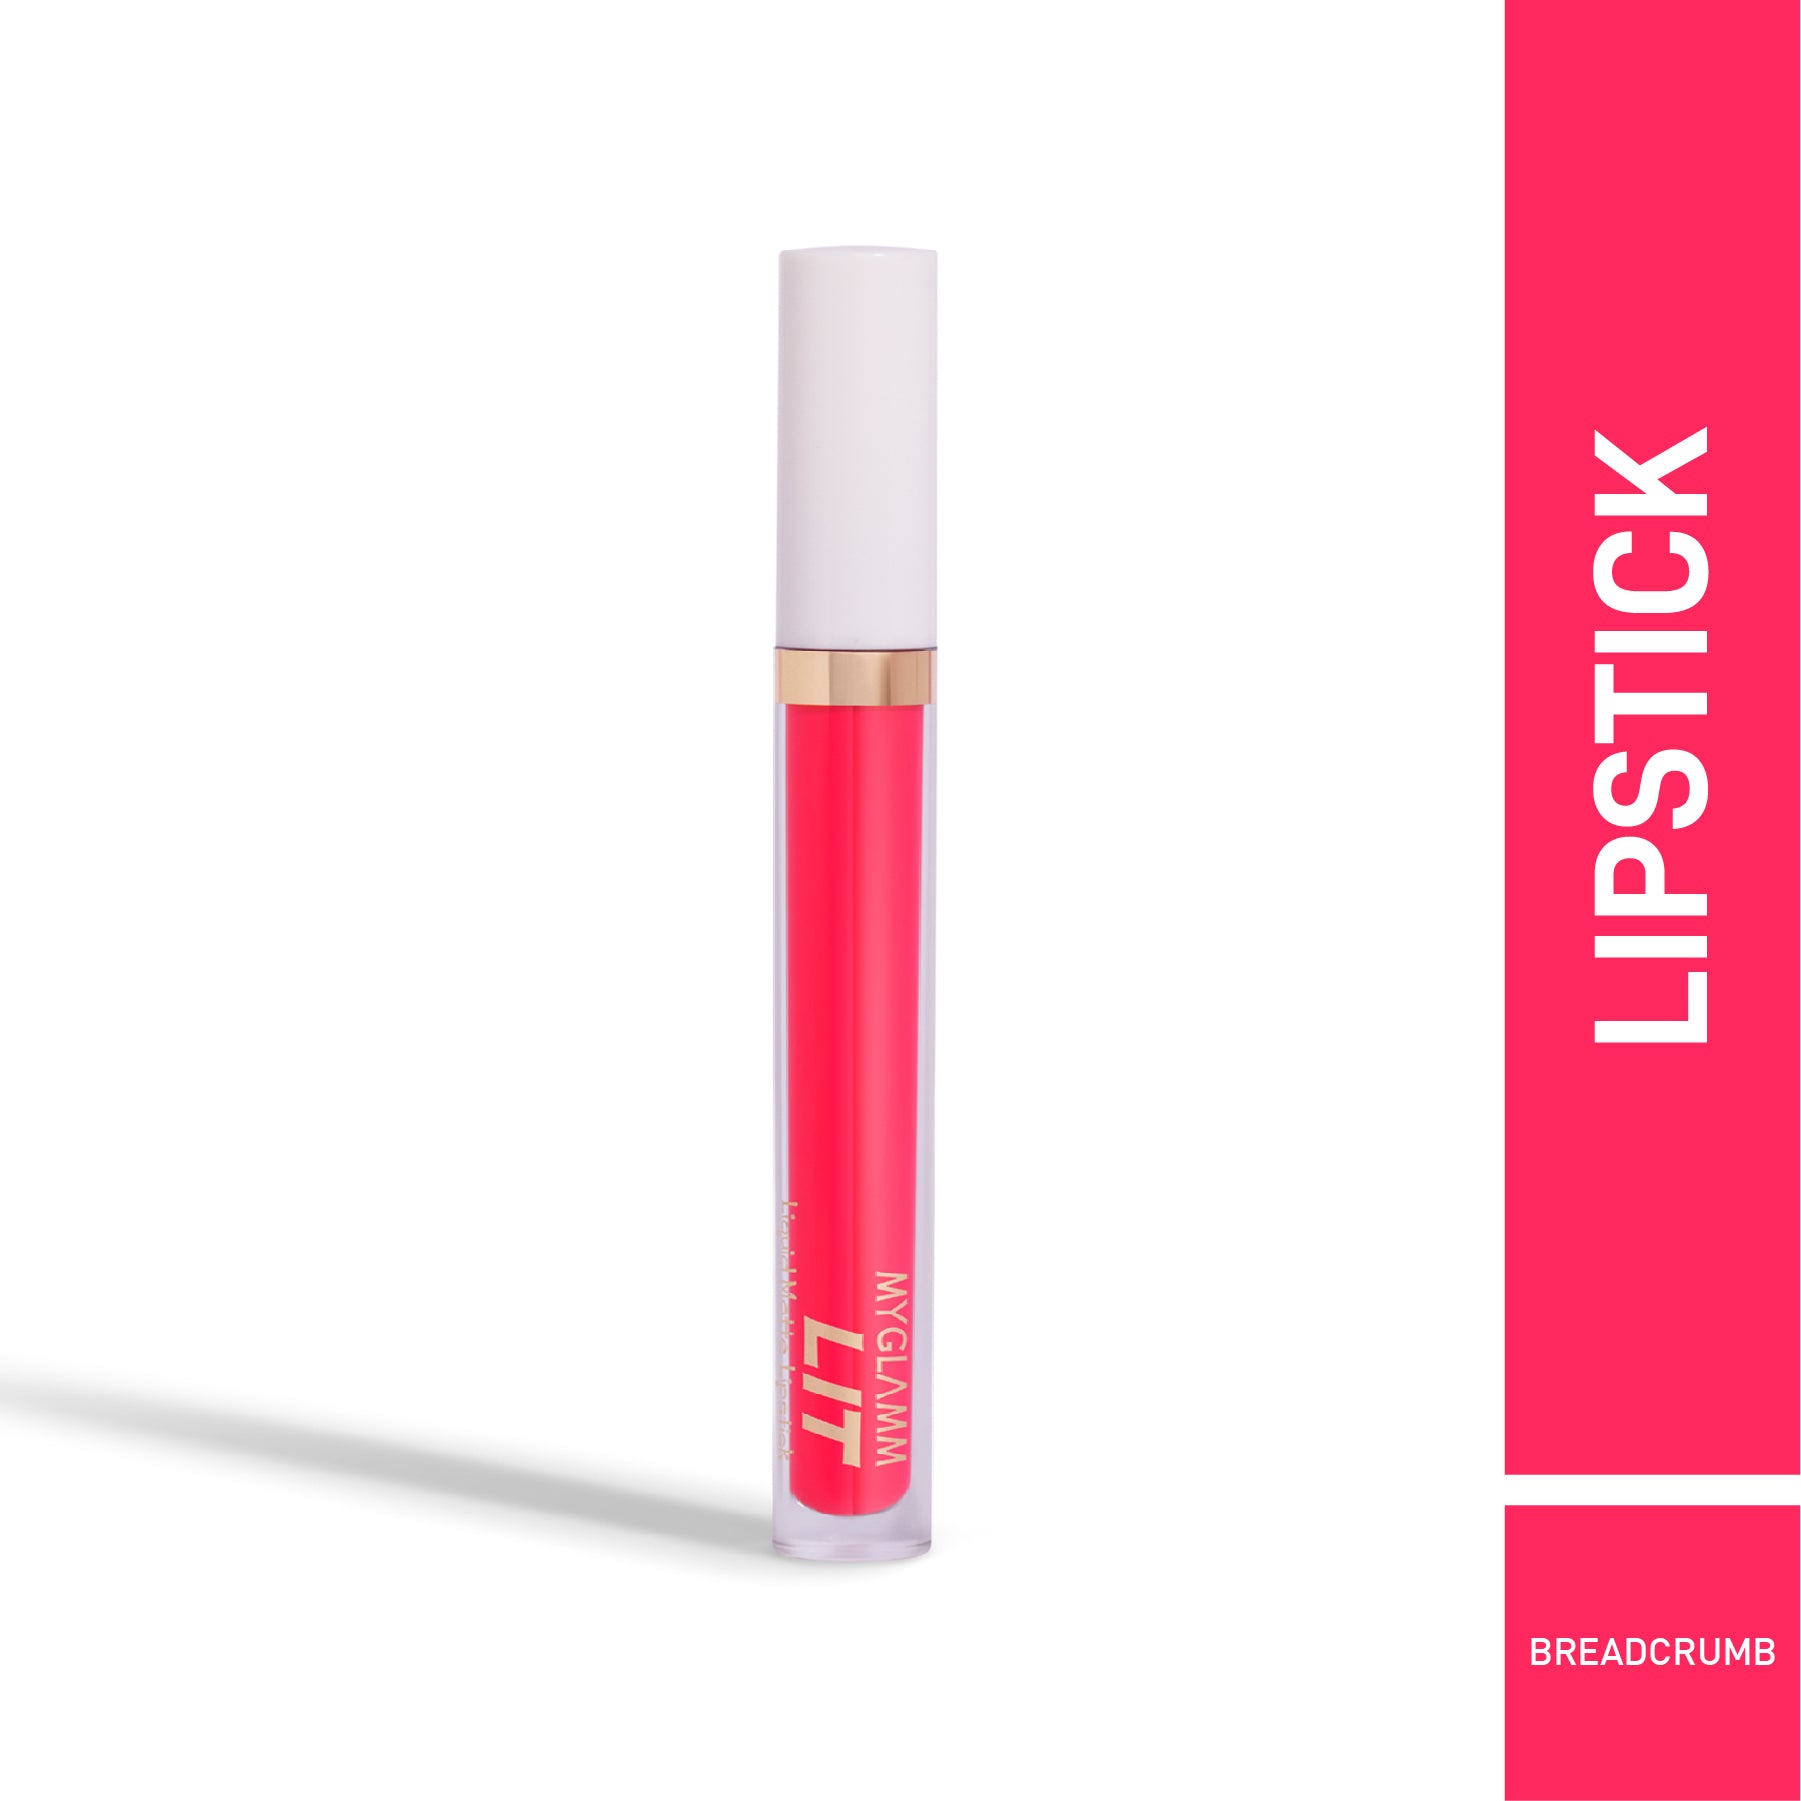 MyGlamm LIT Liquid Matte Lipstick-Breadcrumb-3ml